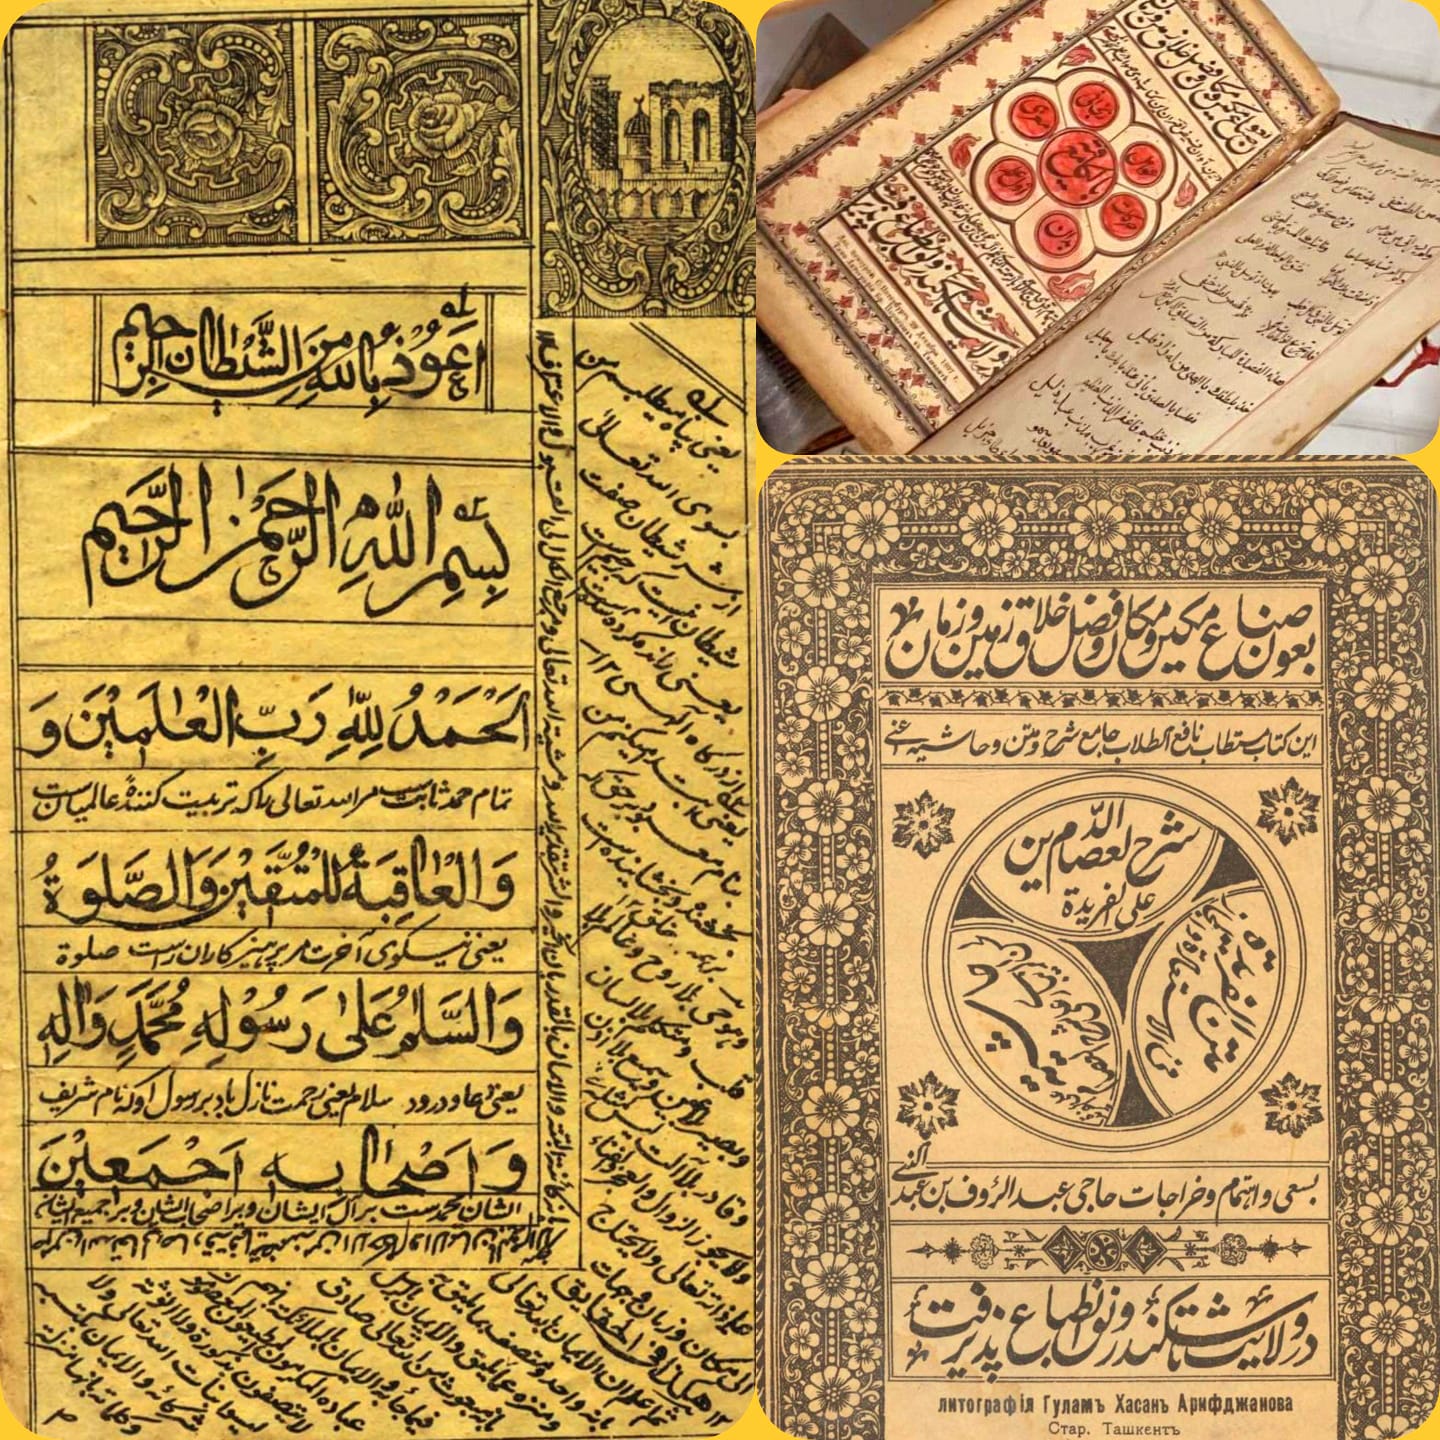 صور لكتب بالعربية طُبعت في بخارى وطشقند نهاية القرن التاسع عشر وبداية القرن العشرين.. إطلالة من خلال الصور..